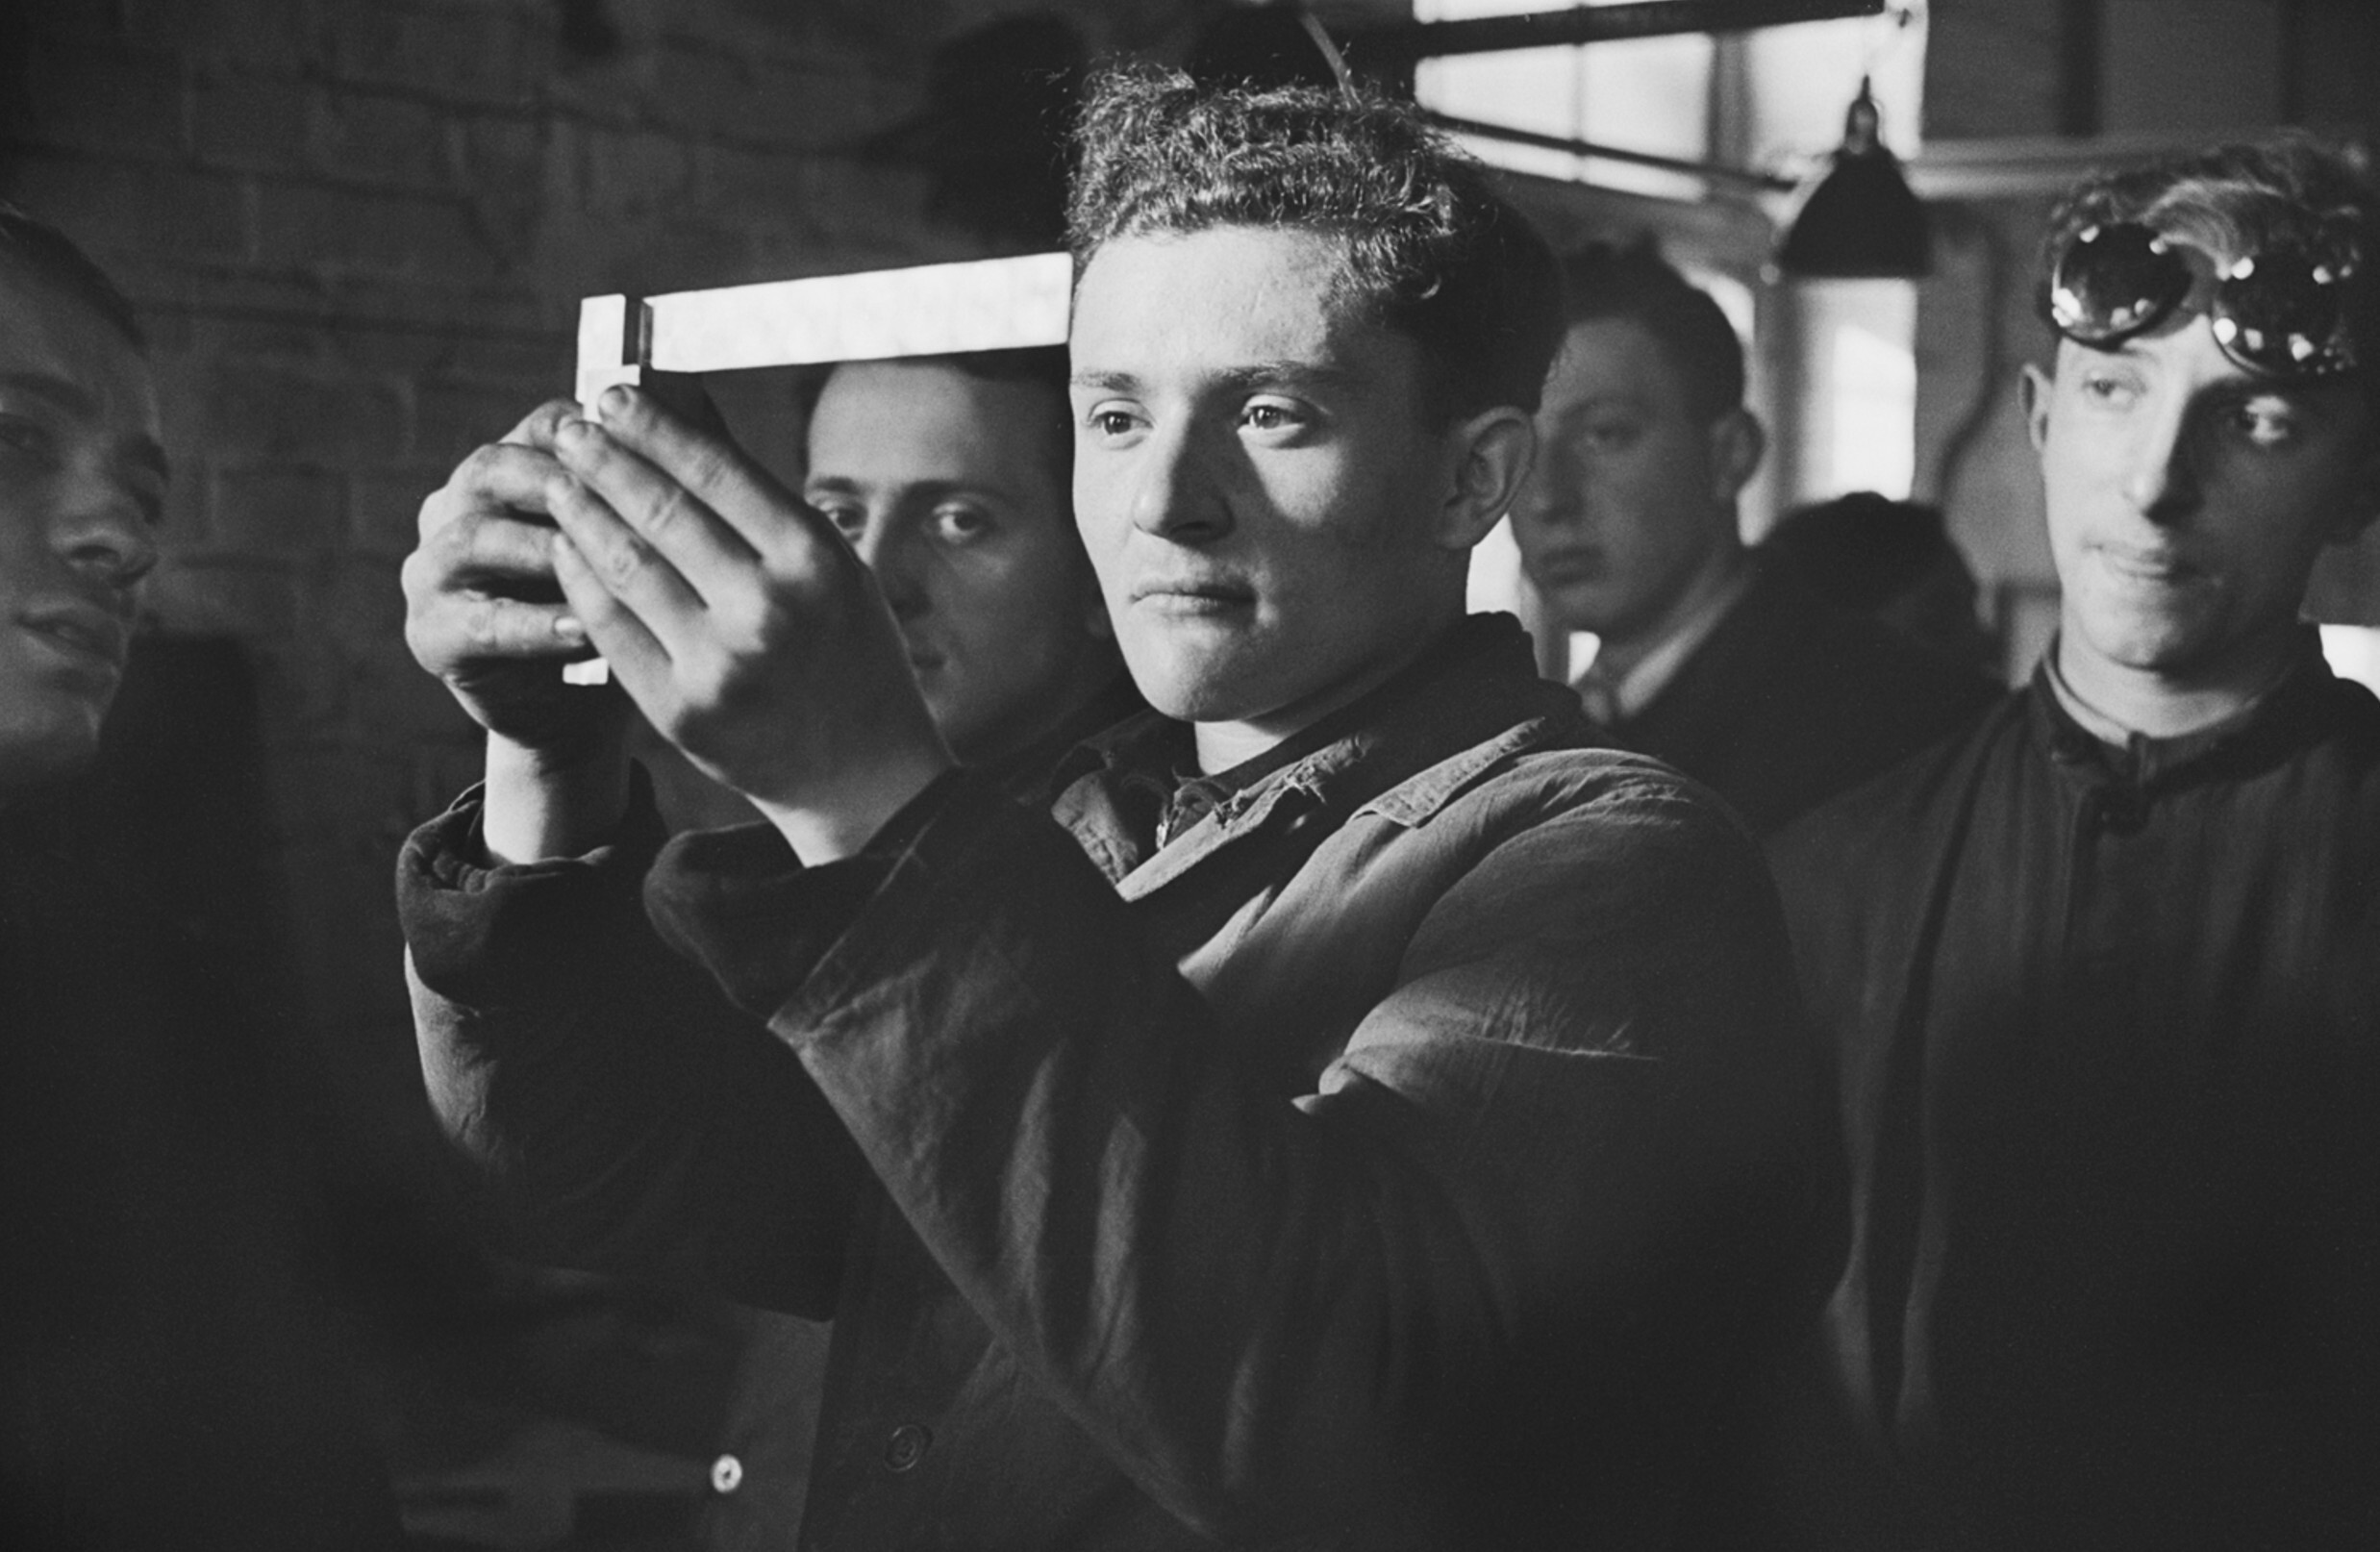 Студенты, изучающие технику работы с металлом, Общество ремесленников и сельскохозяйственного труда (ОРТ), Марсель, Франция, 1939 год. Фотограф Роман Вишняк